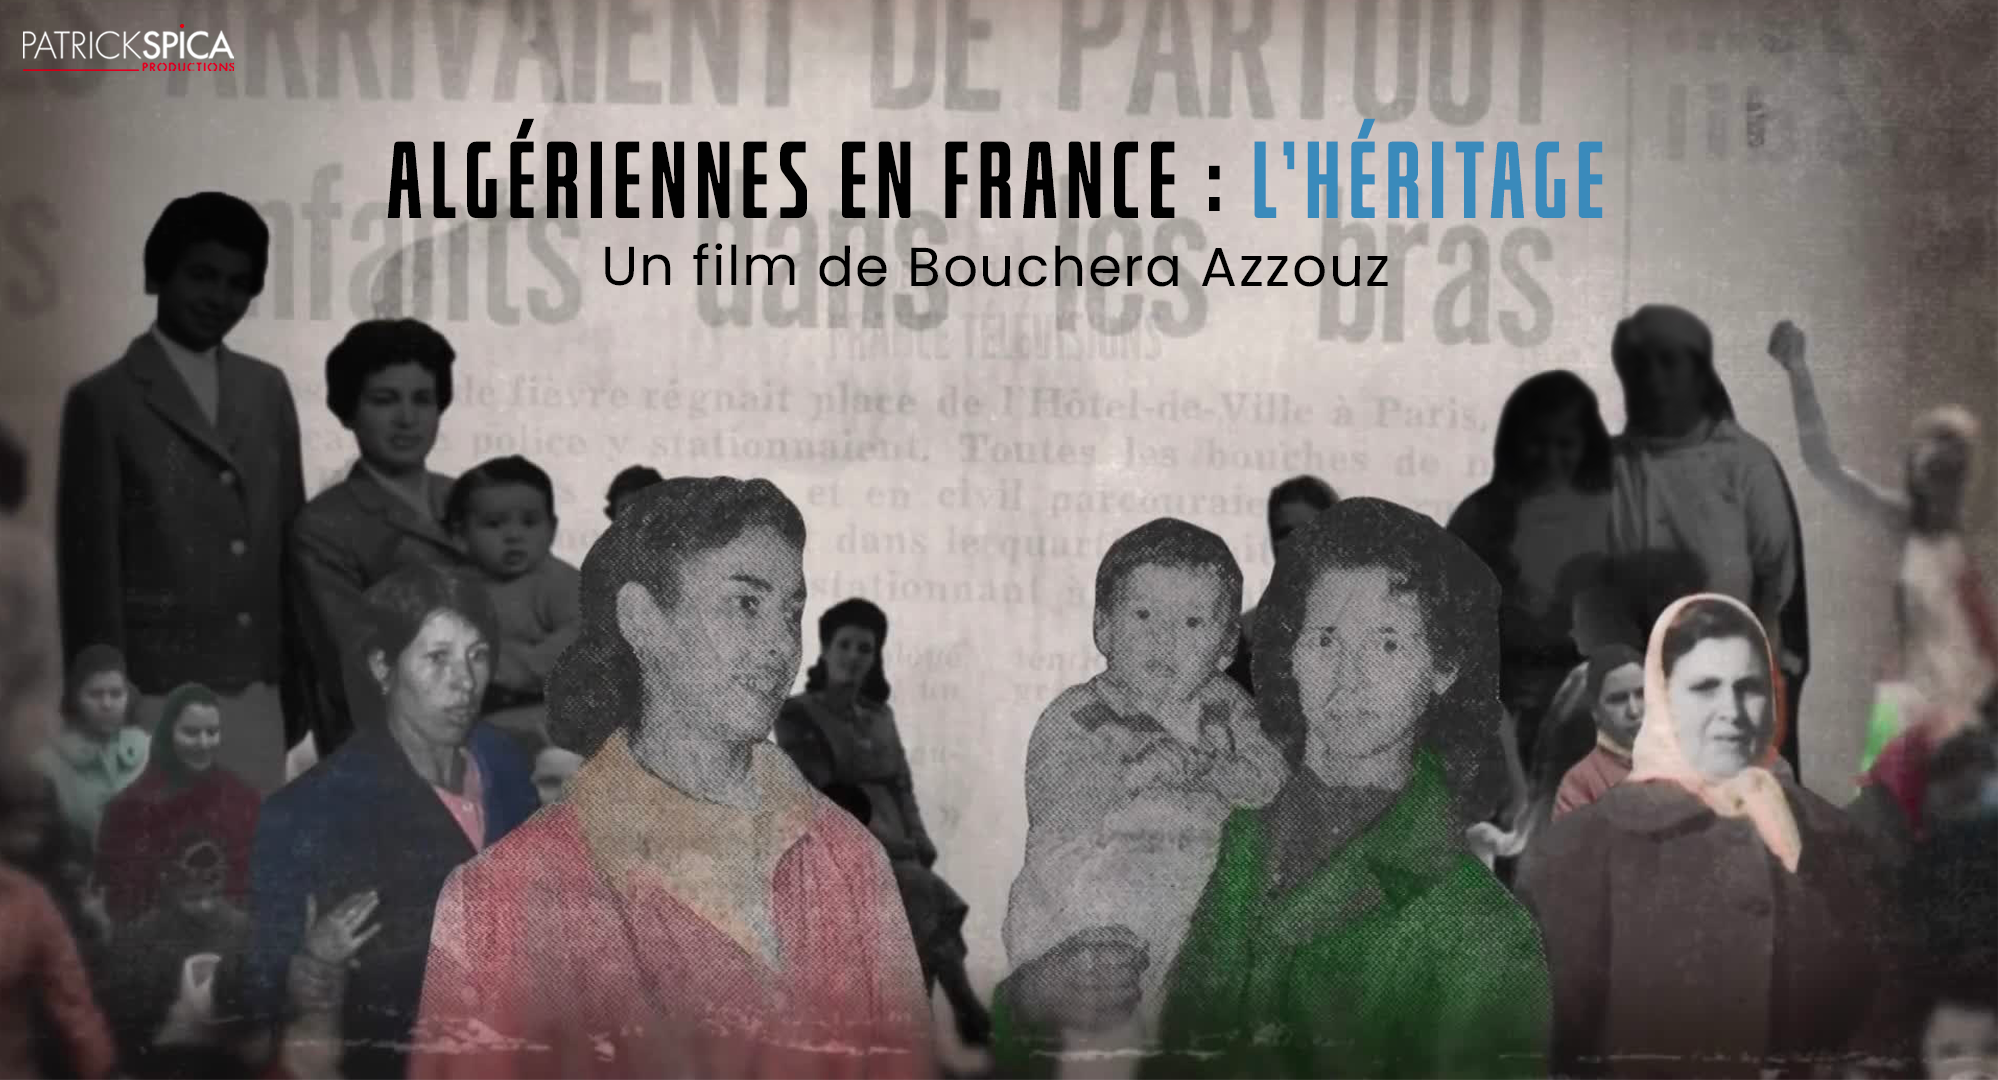 ALGERIAN WOMEN IN FRANCE : THE LEGACY